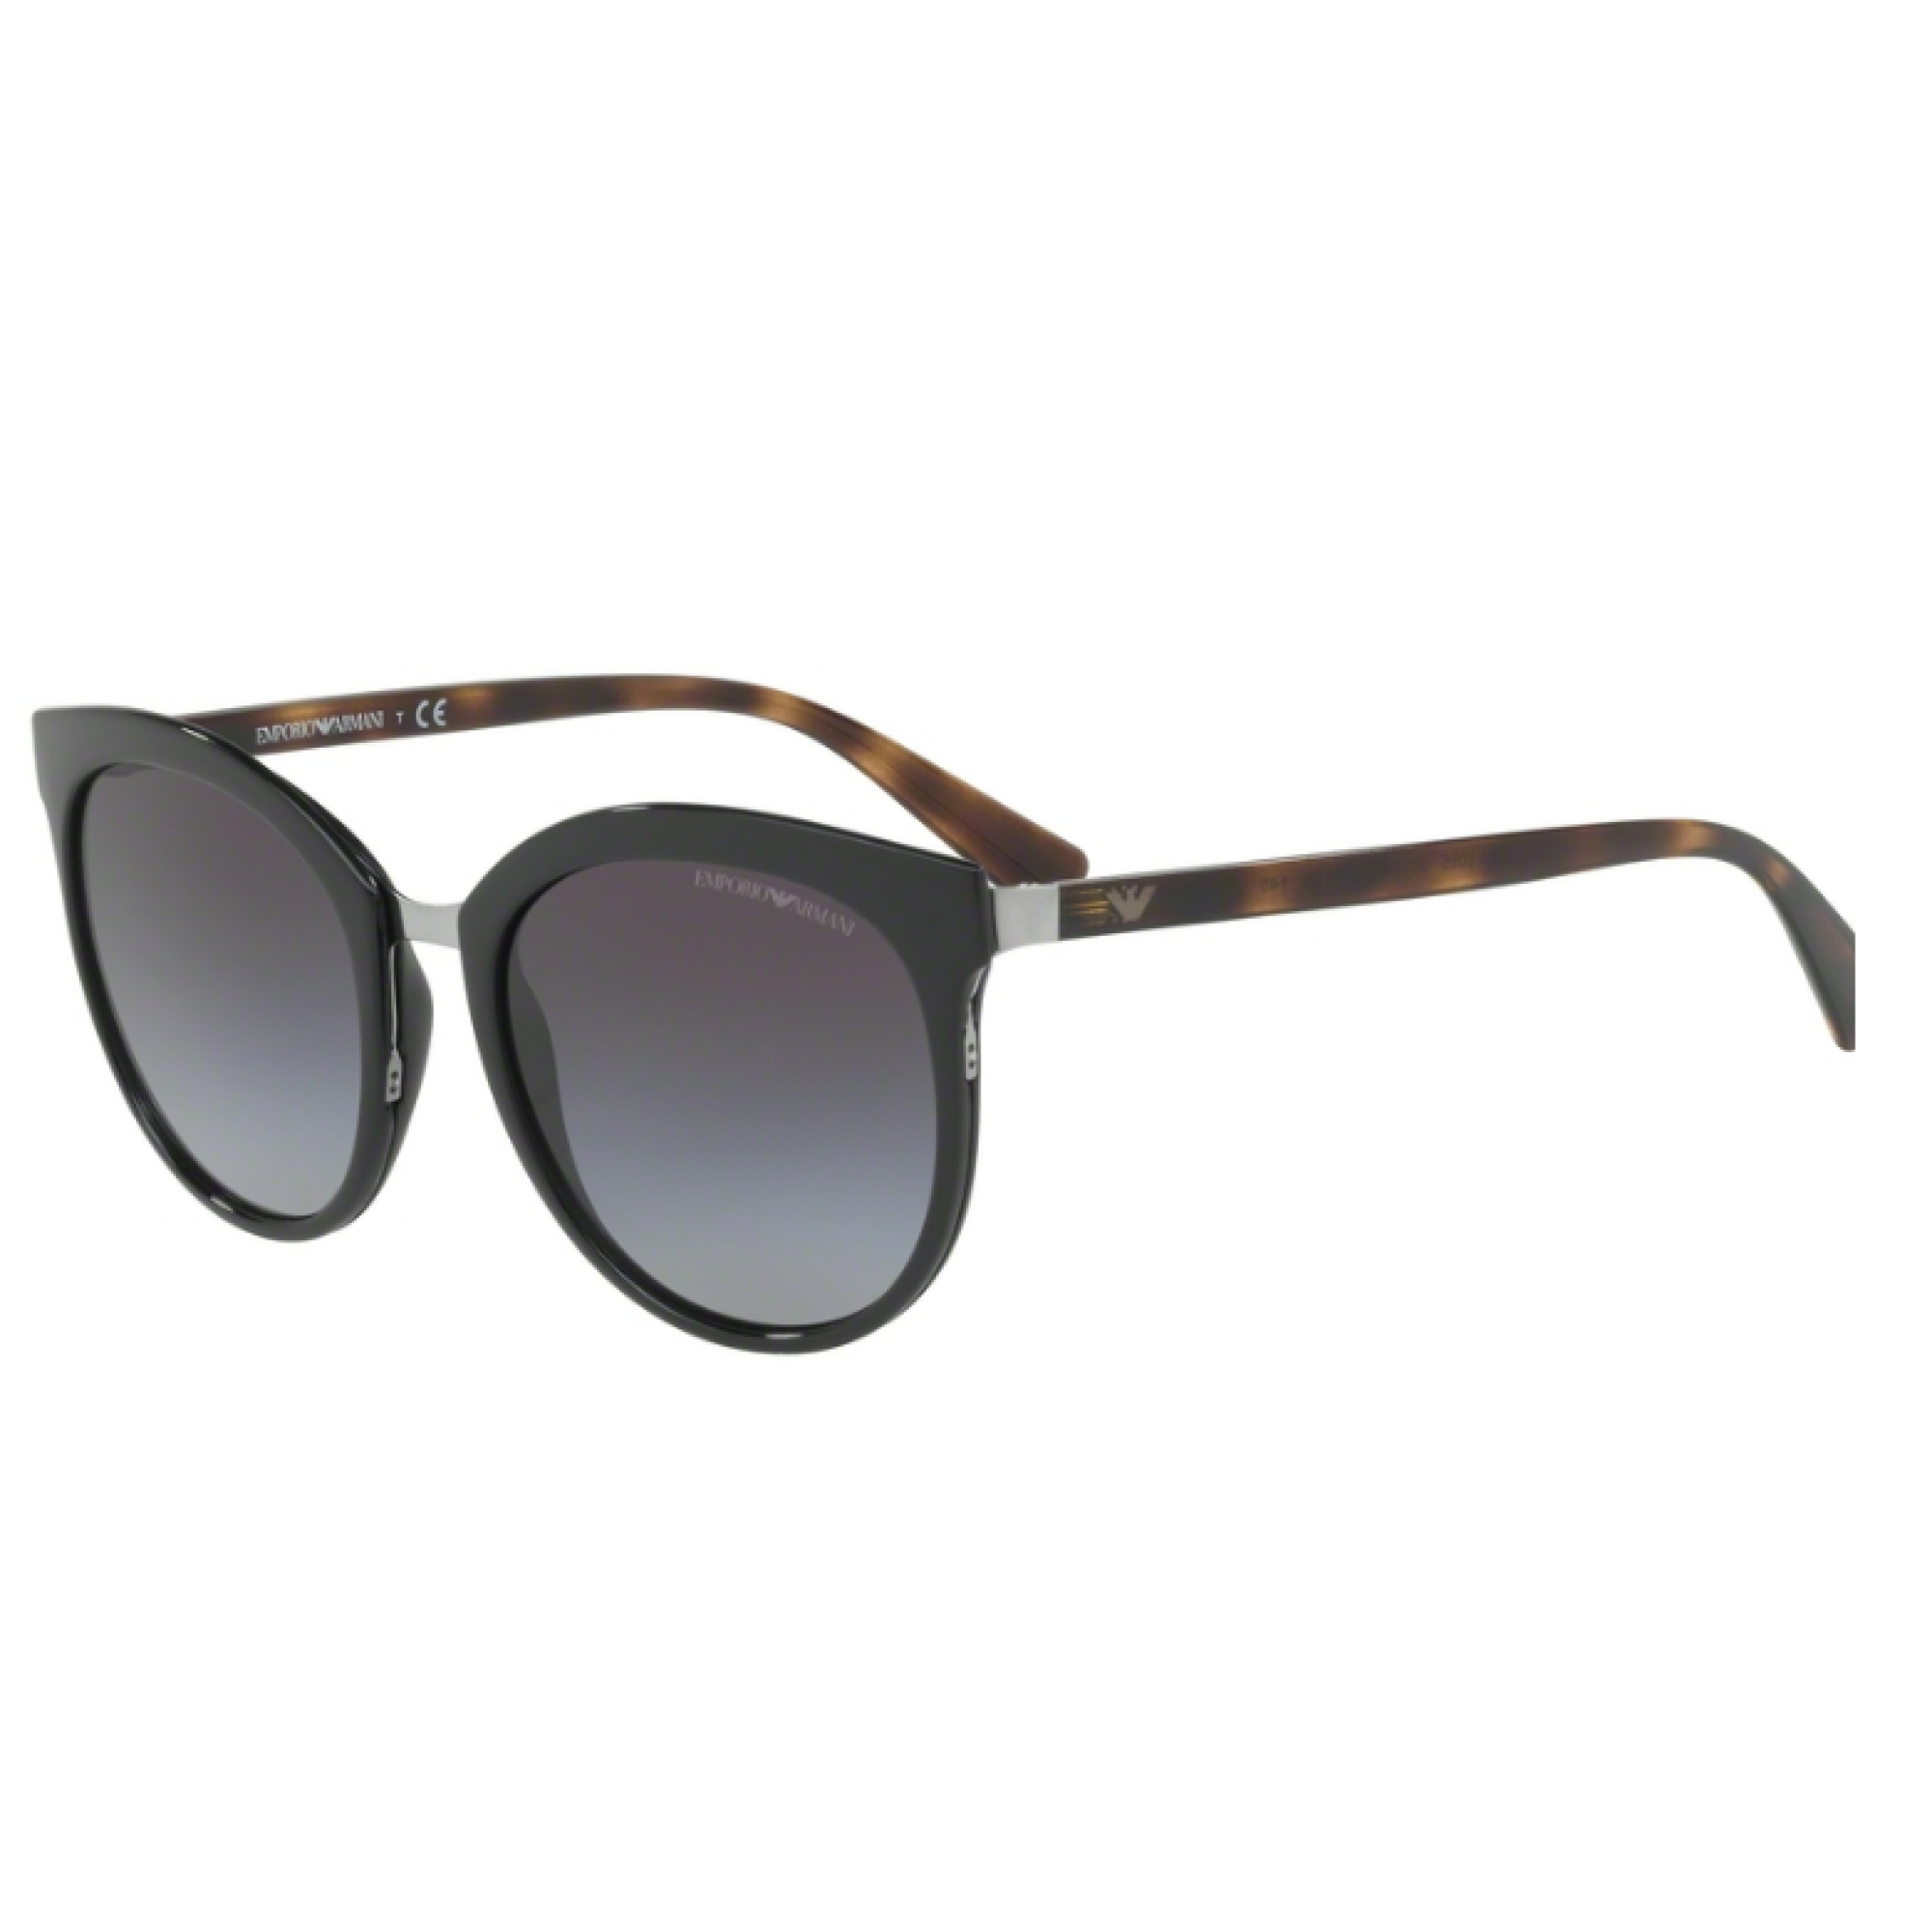 Emporio Armani EA 2055 - 30108G Black | Sunglasses Woman